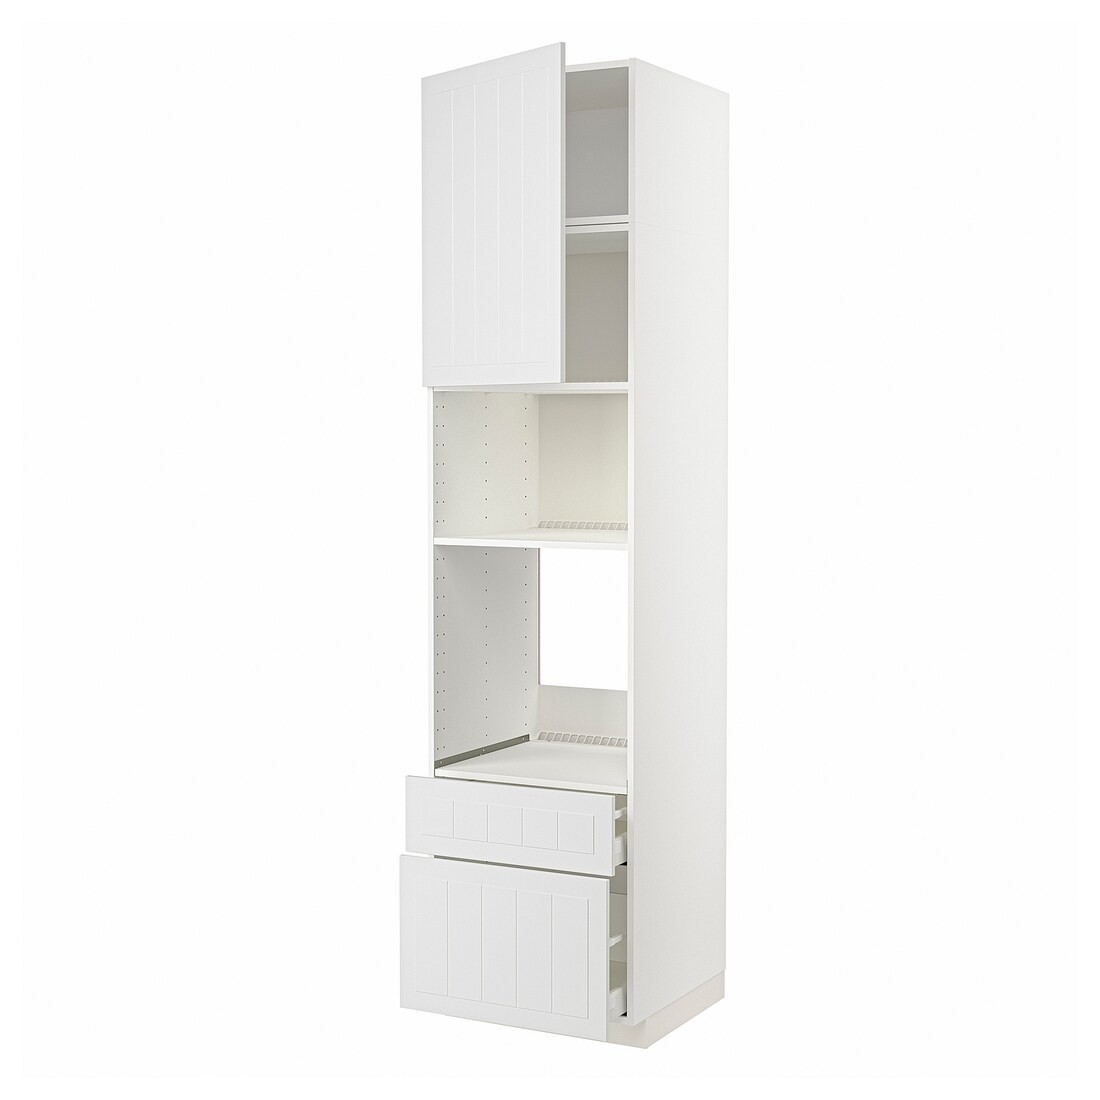 IKEA METOD МЕТОД / MAXIMERA МАКСИМЕРА Высокий шкаф для духовки / микроволновки с дверями / 2 ящиками, белый / Stensund белый, 60x60x240 см 19463849 | 194.638.49